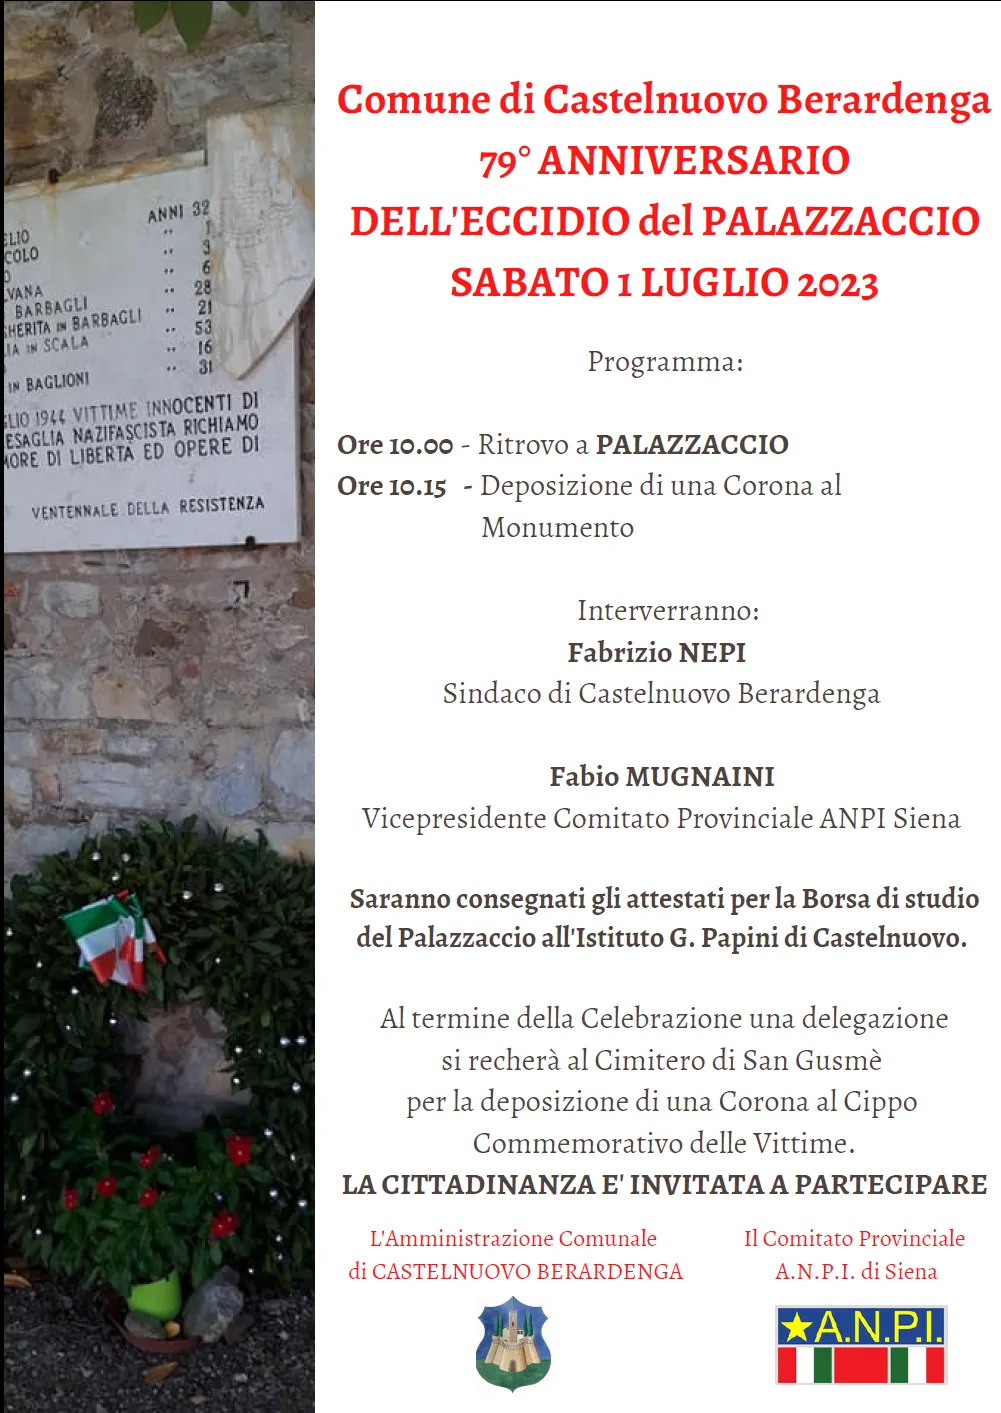 Sabato 1° luglio Castelnuovo Berardenga ricorda l’eccidio del Palazzaccio del 1944